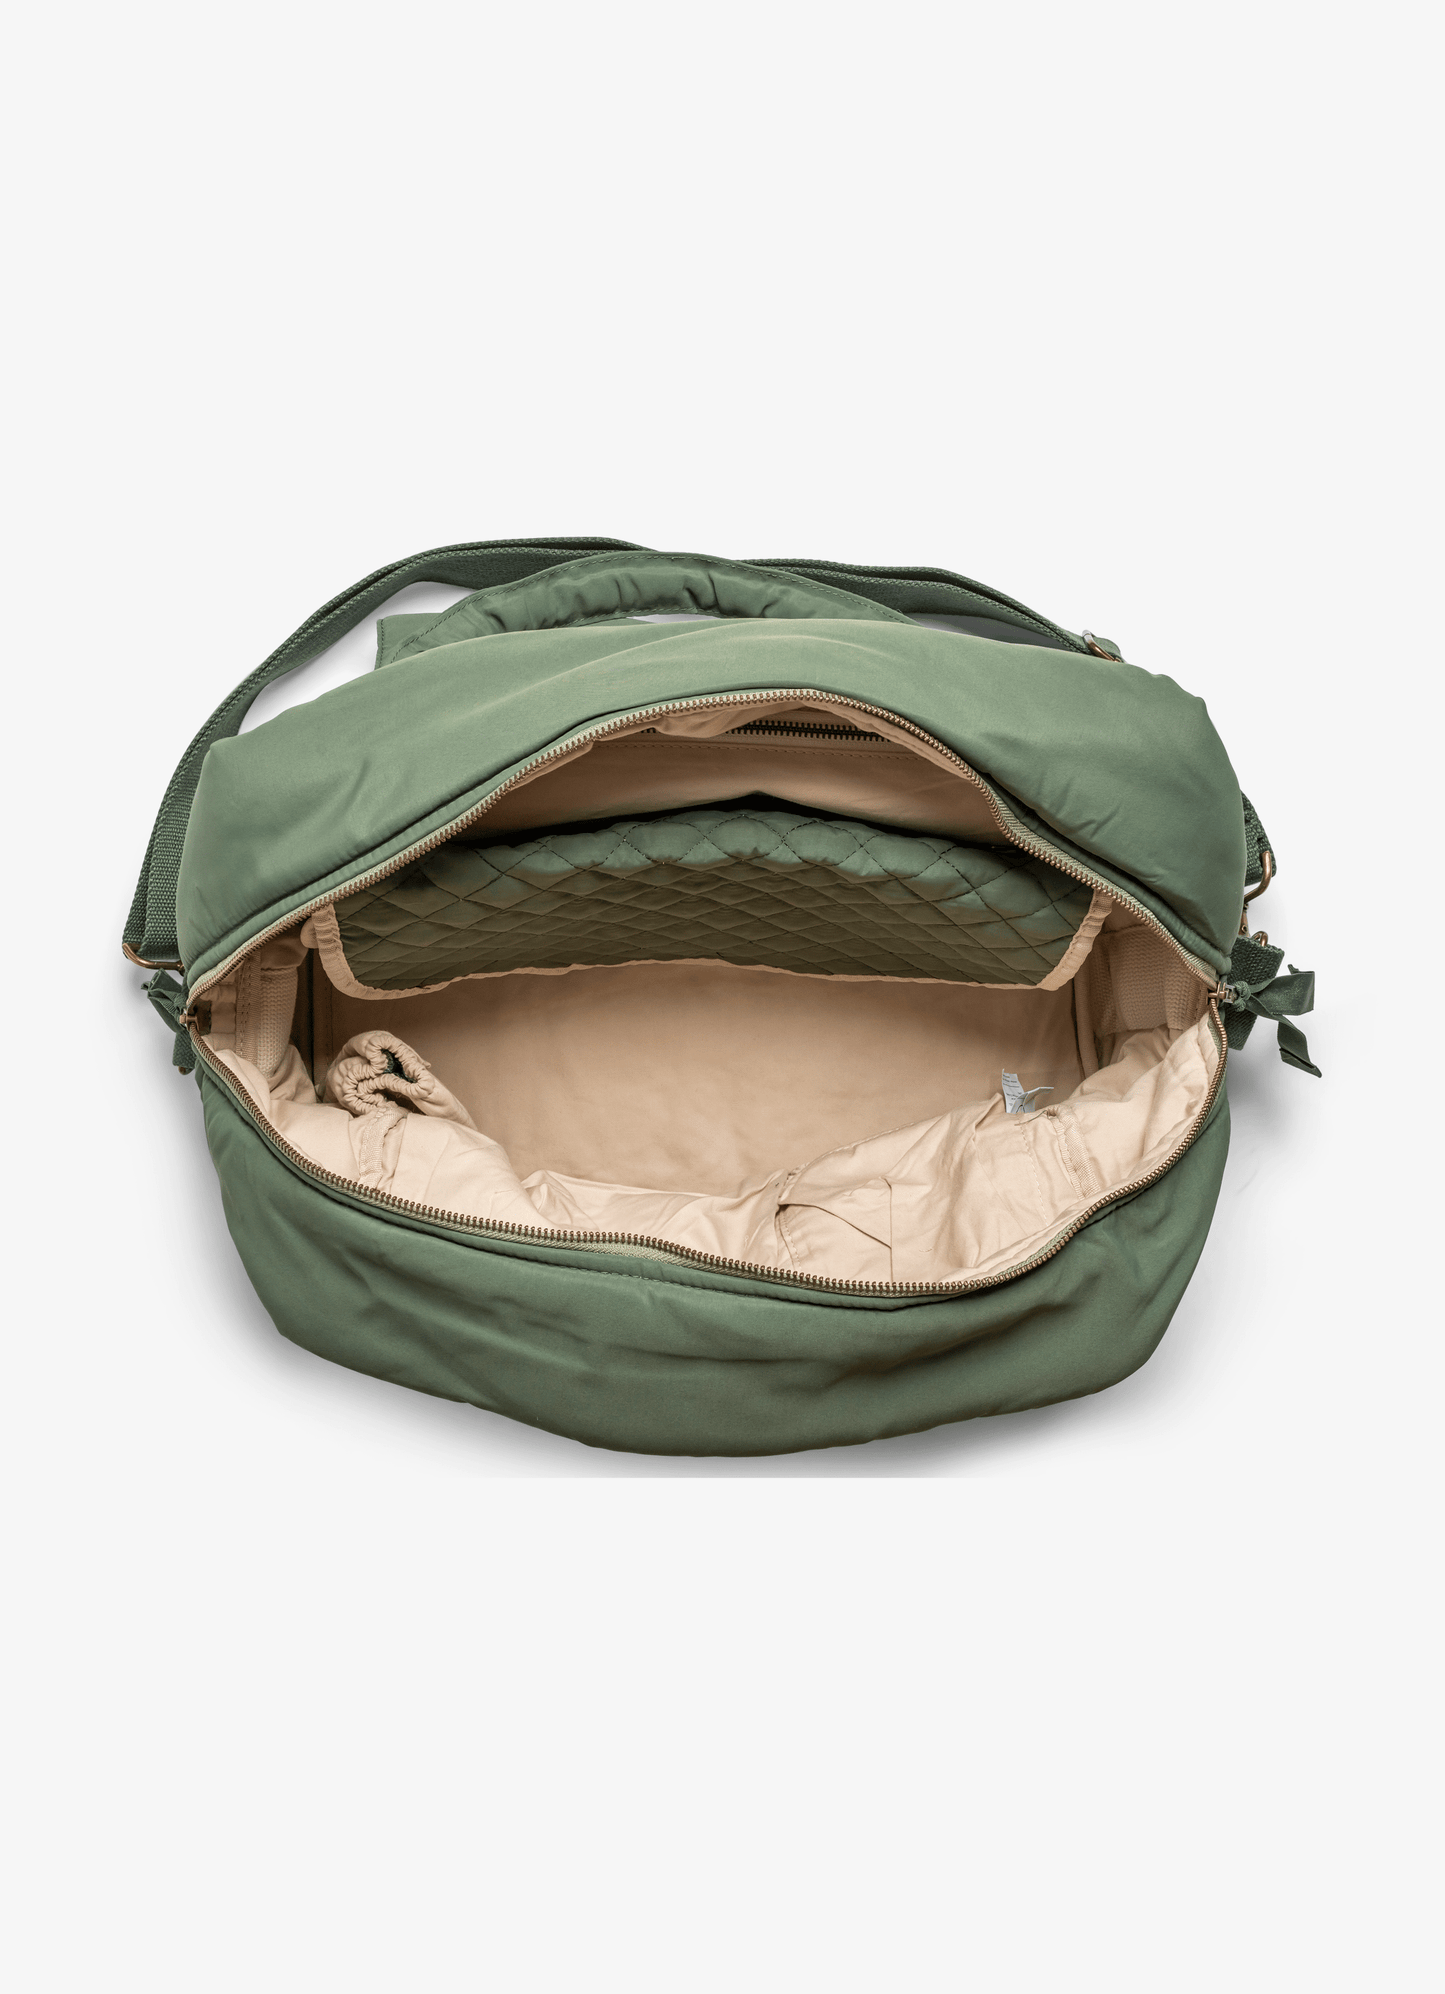  حقيبة متعددة االإستعمالات - زيتوني أخضر